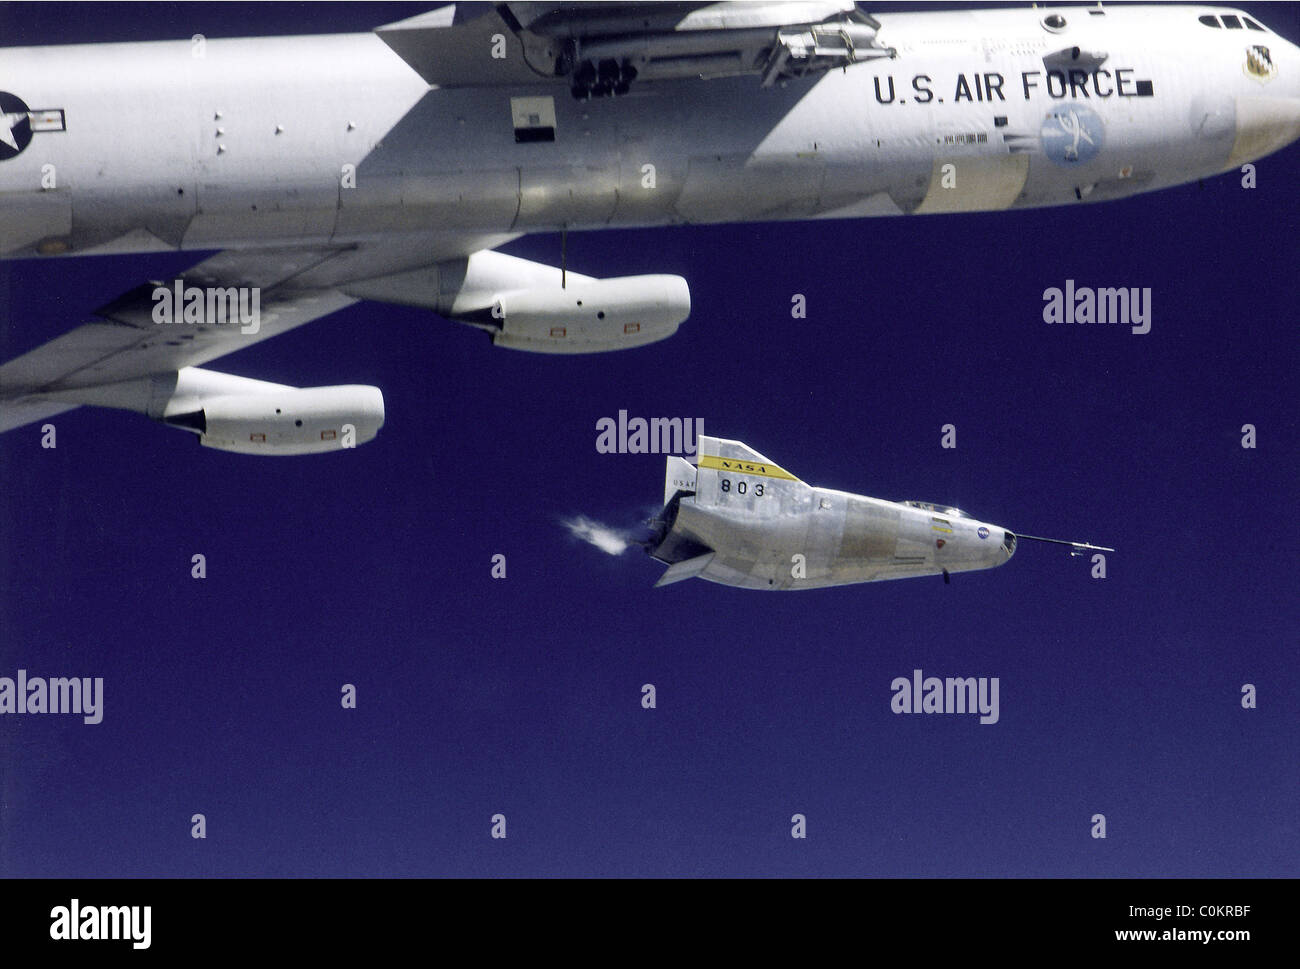 M2-F3-sollevamento corpo aerei di ricerca inizia il suo razzo-powered volo dopo essere stato lanciato da ala della NASA B-52 mothership. Foto Stock